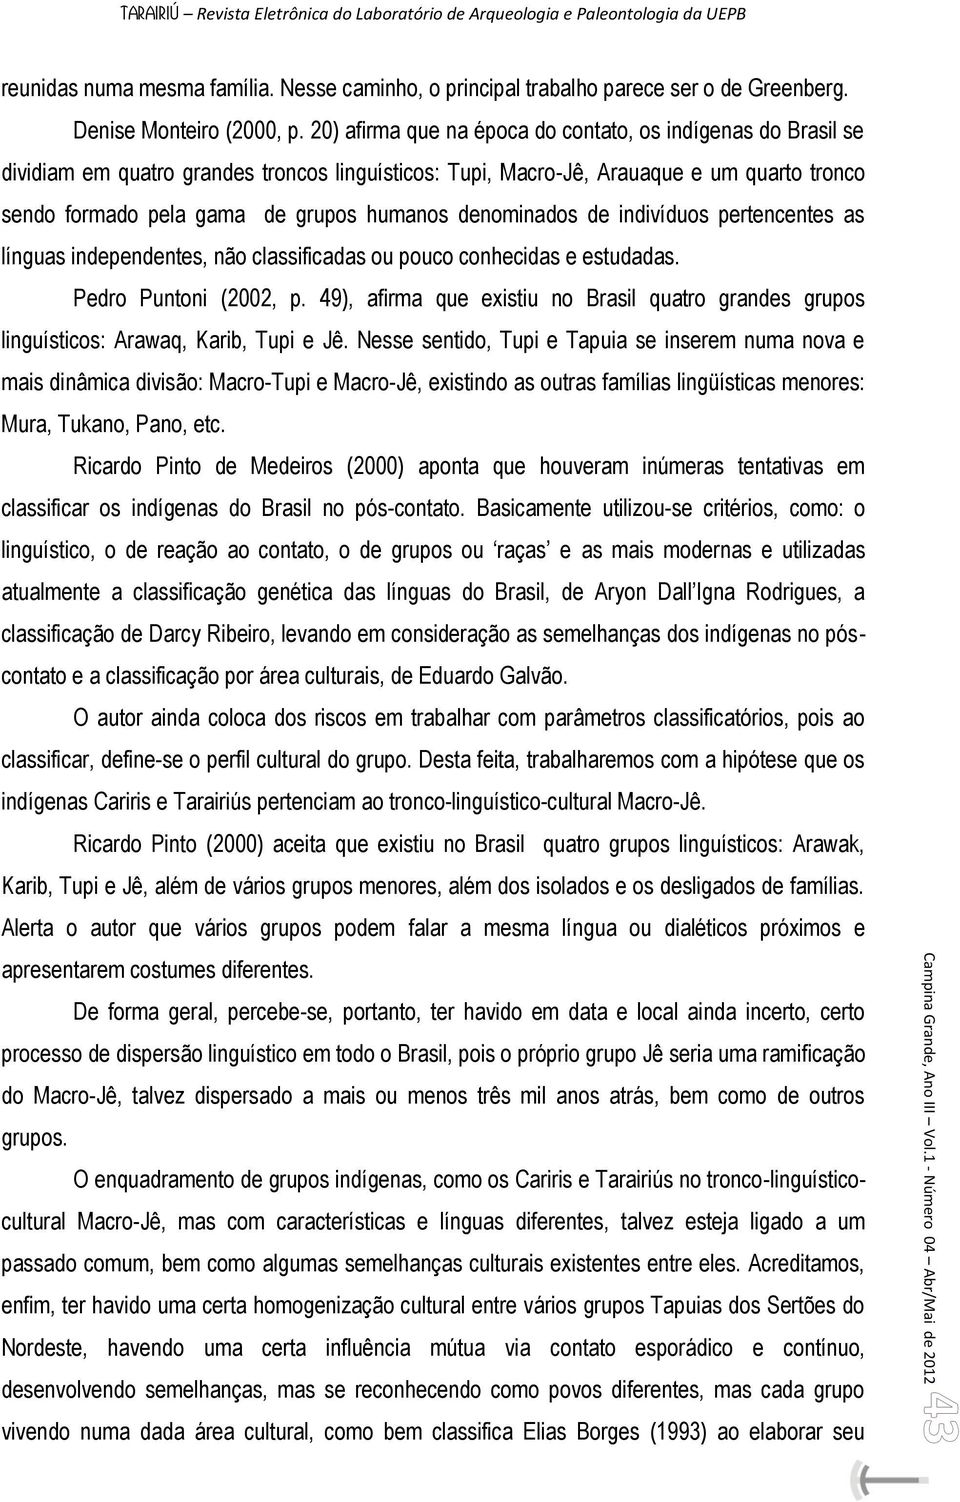 denominados de indivíduos pertencentes as línguas independentes, não classificadas ou pouco conhecidas e estudadas. Pedro Puntoni (2002, p.